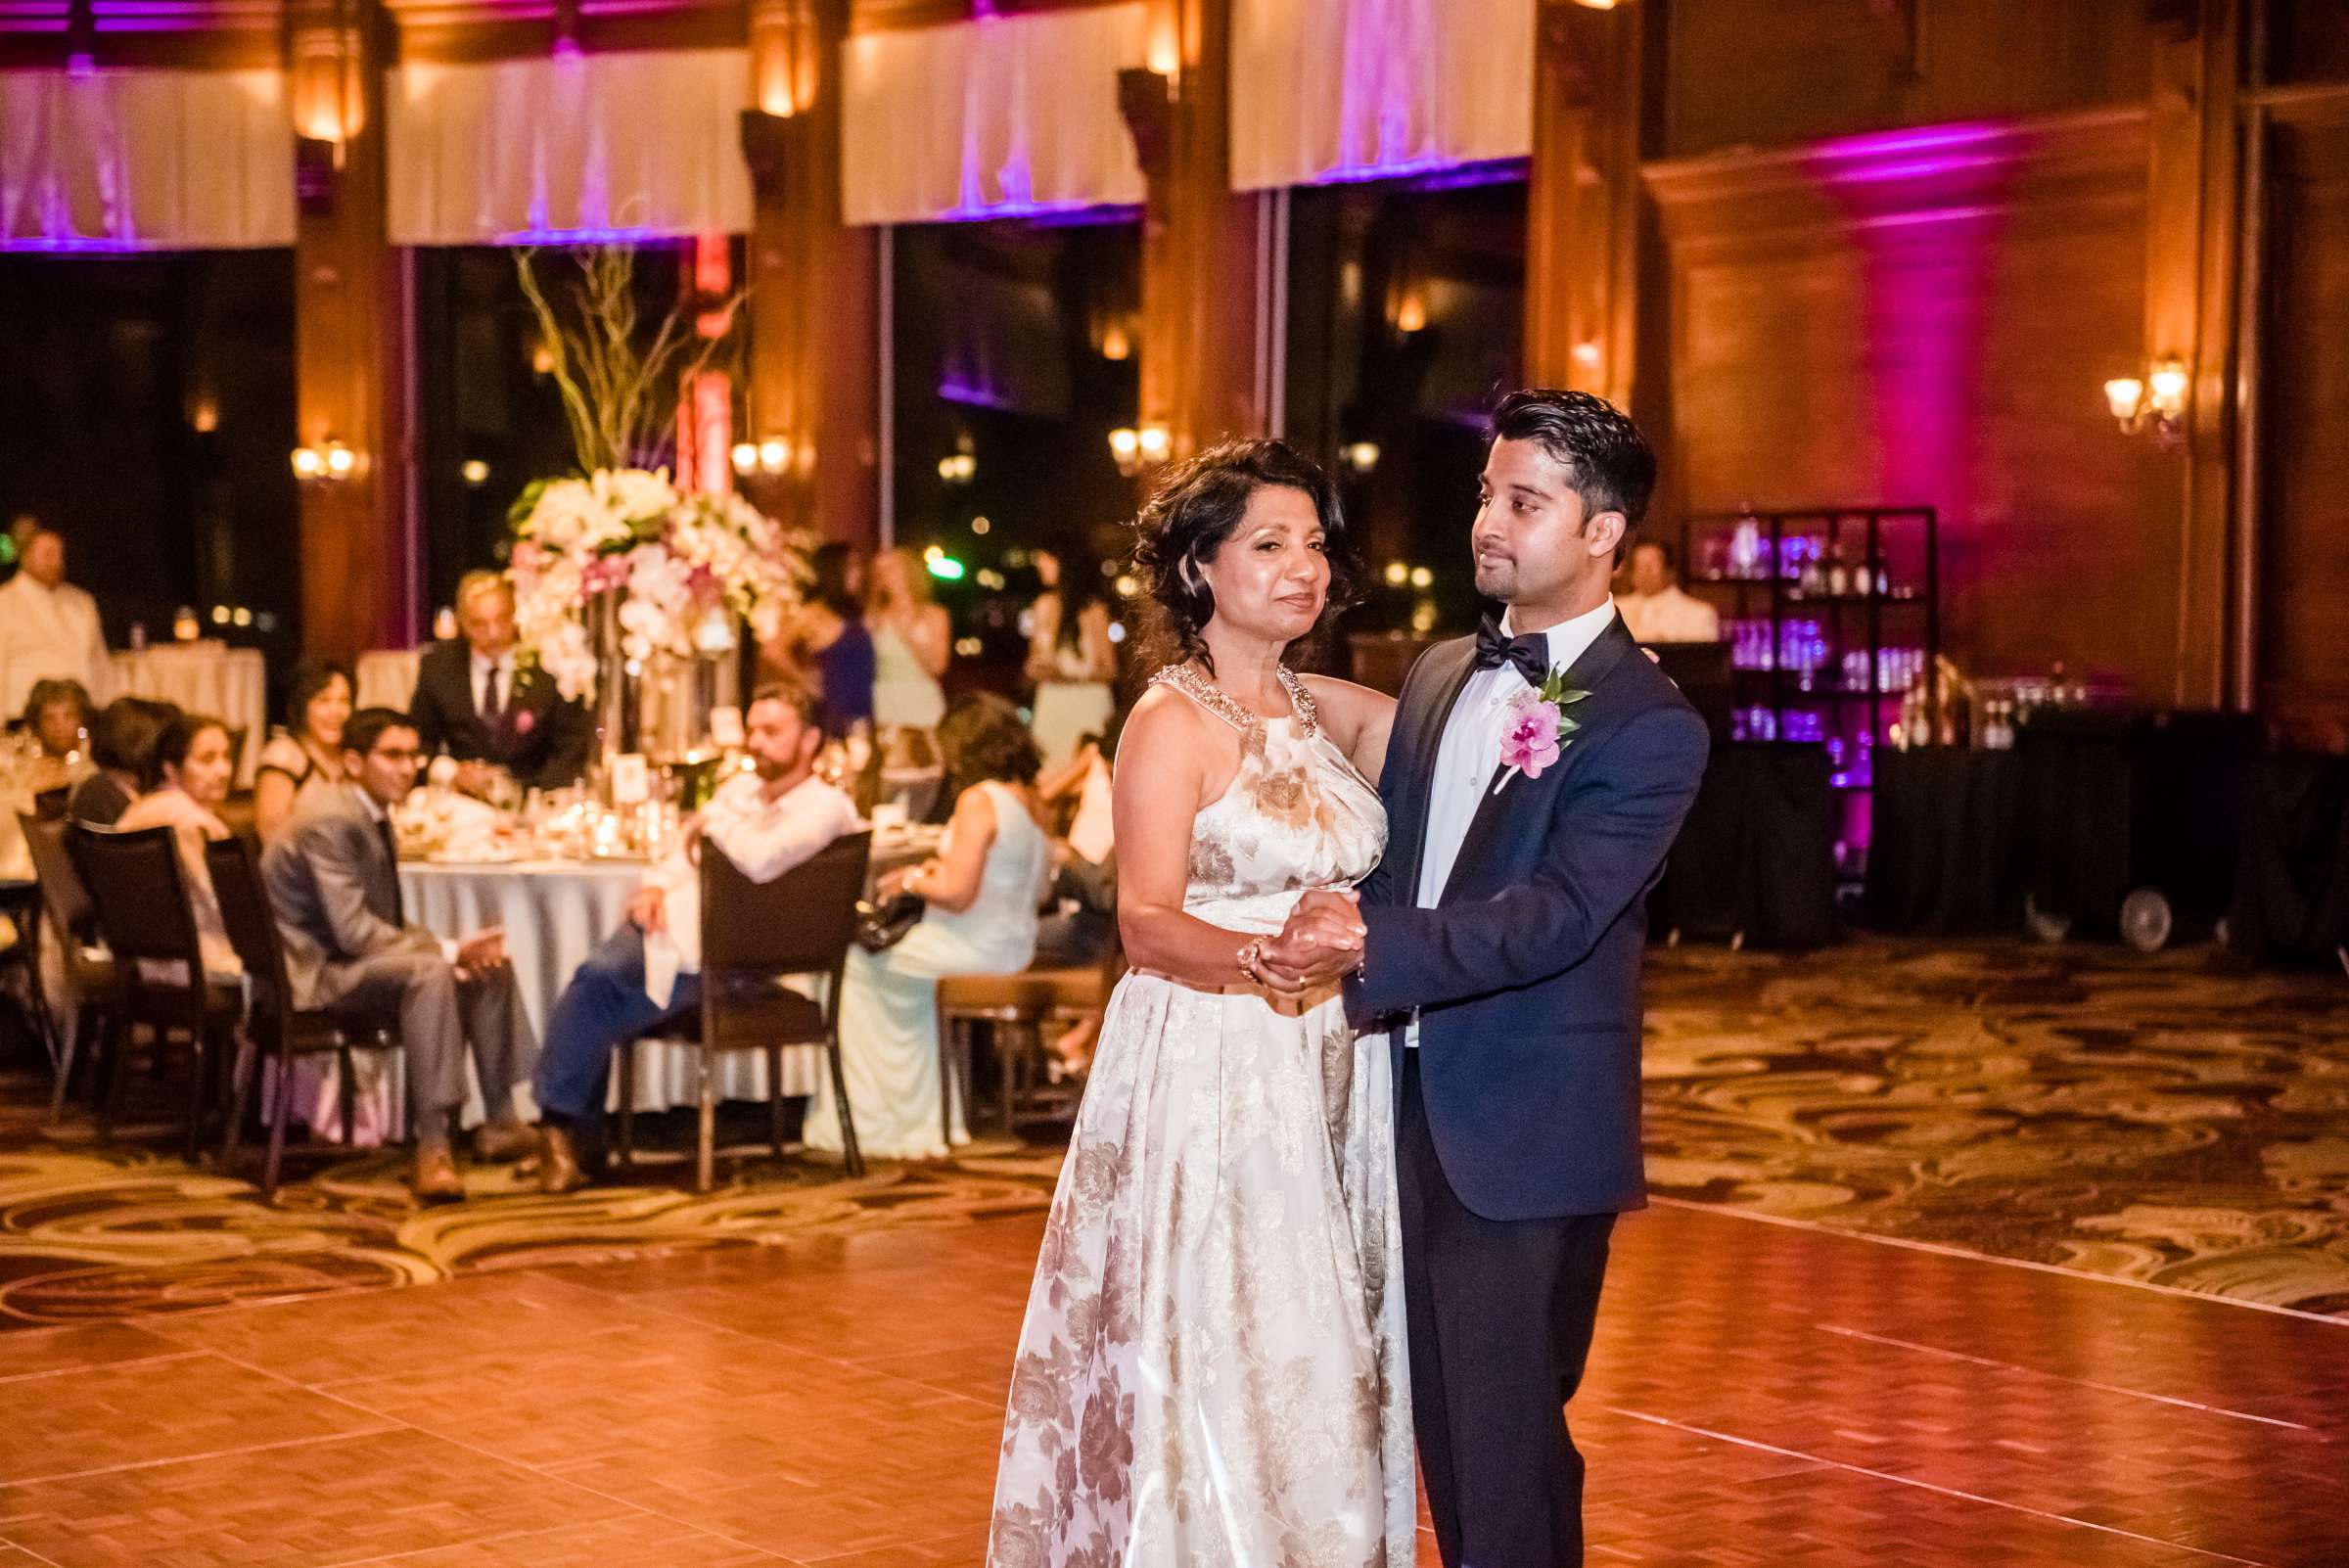 Hotel Del Coronado Wedding, Sabrina and Gehaan Wedding Photo #409160 by True Photography